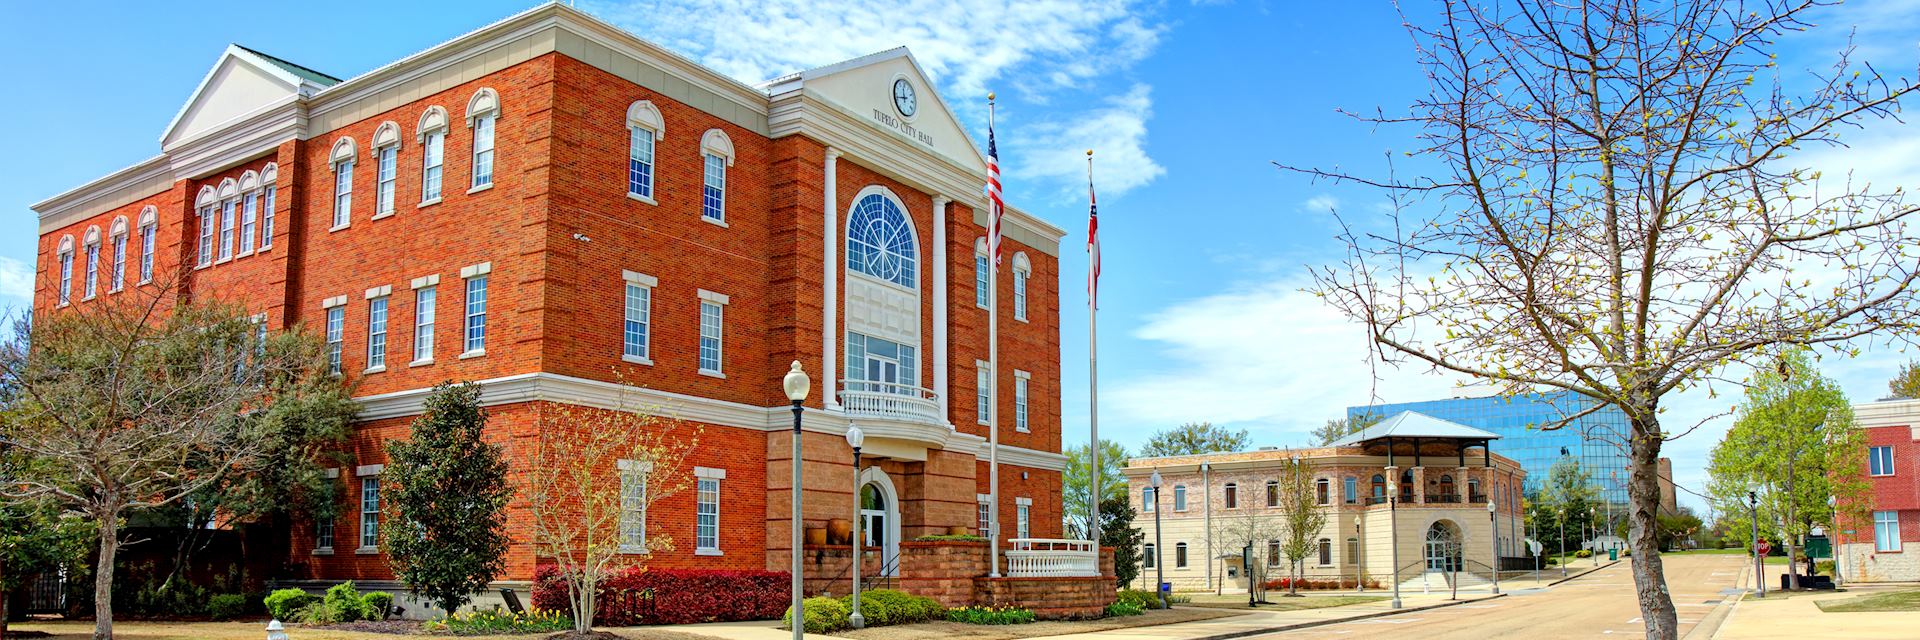 Tupelo City Hall